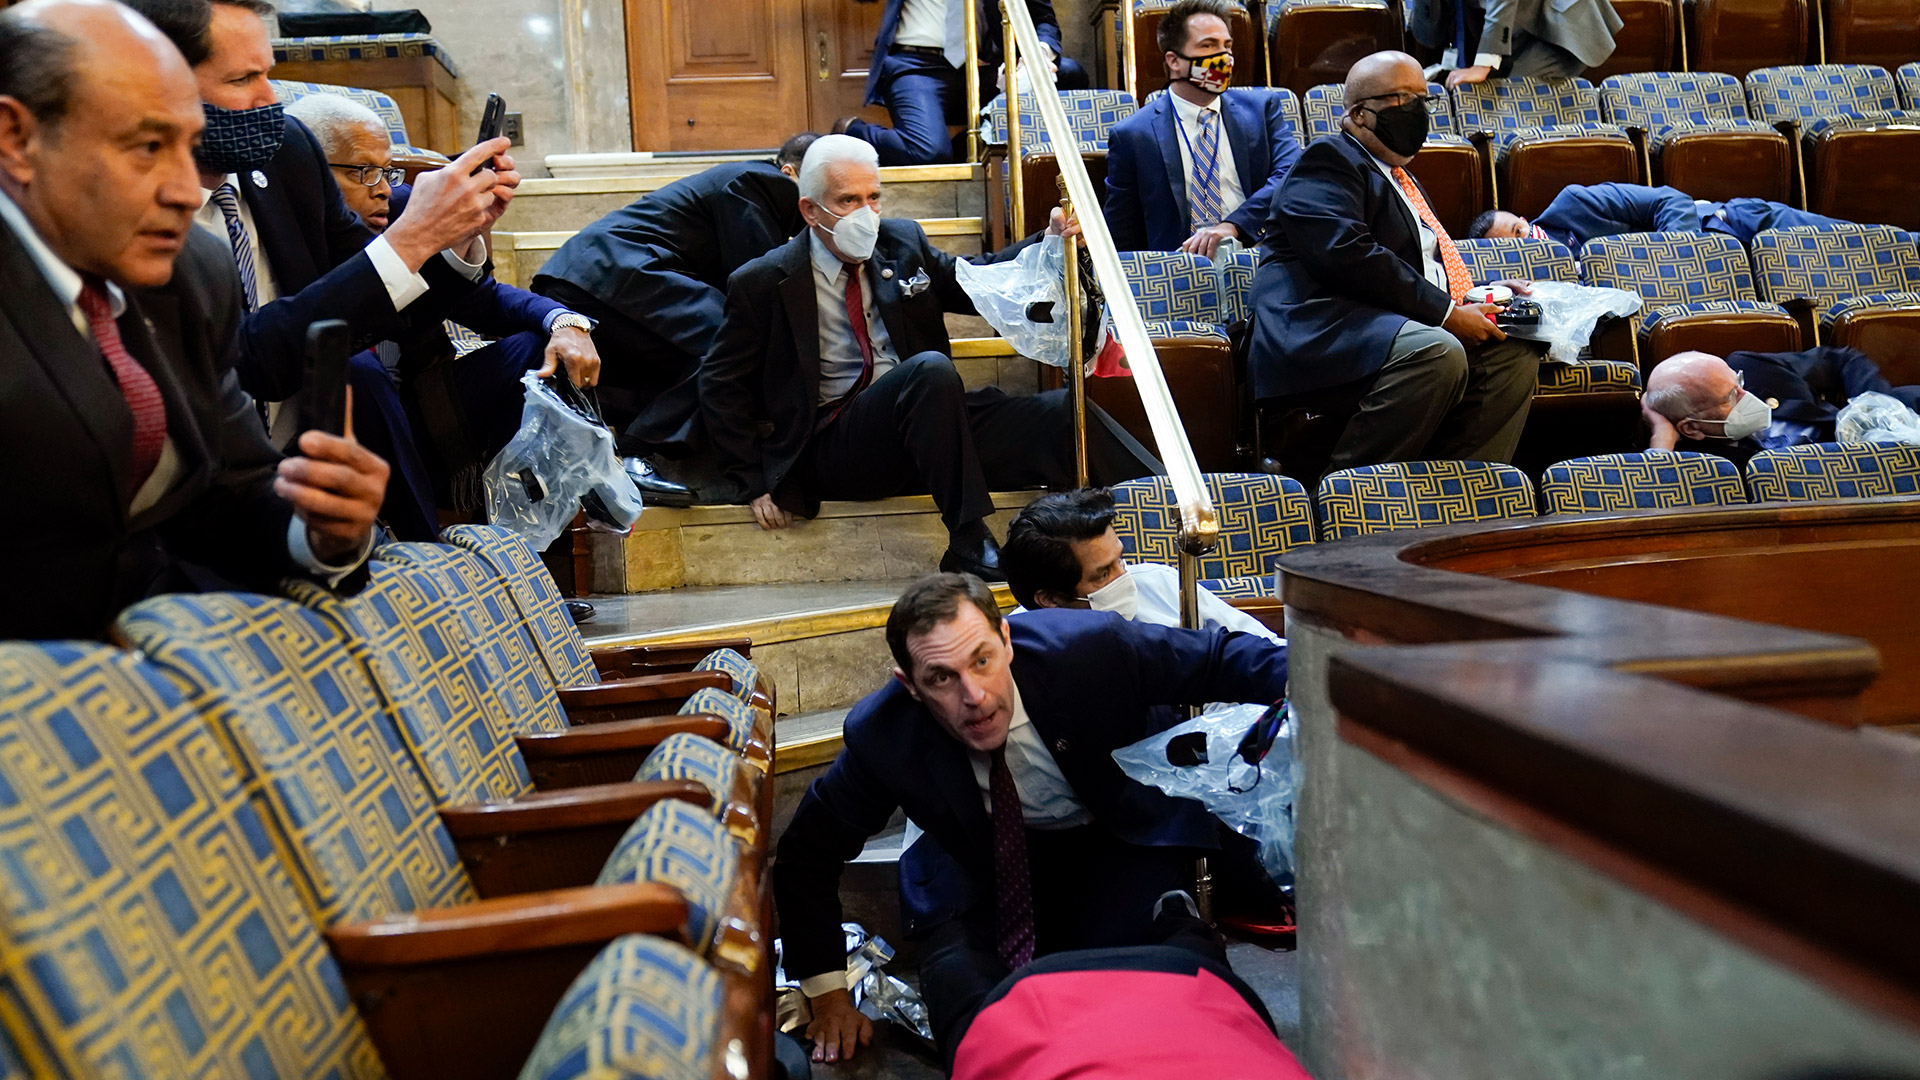 Personas buscan refugio durante los disturbios en el Capitolio. (AP Photo/Andrew Harnik)